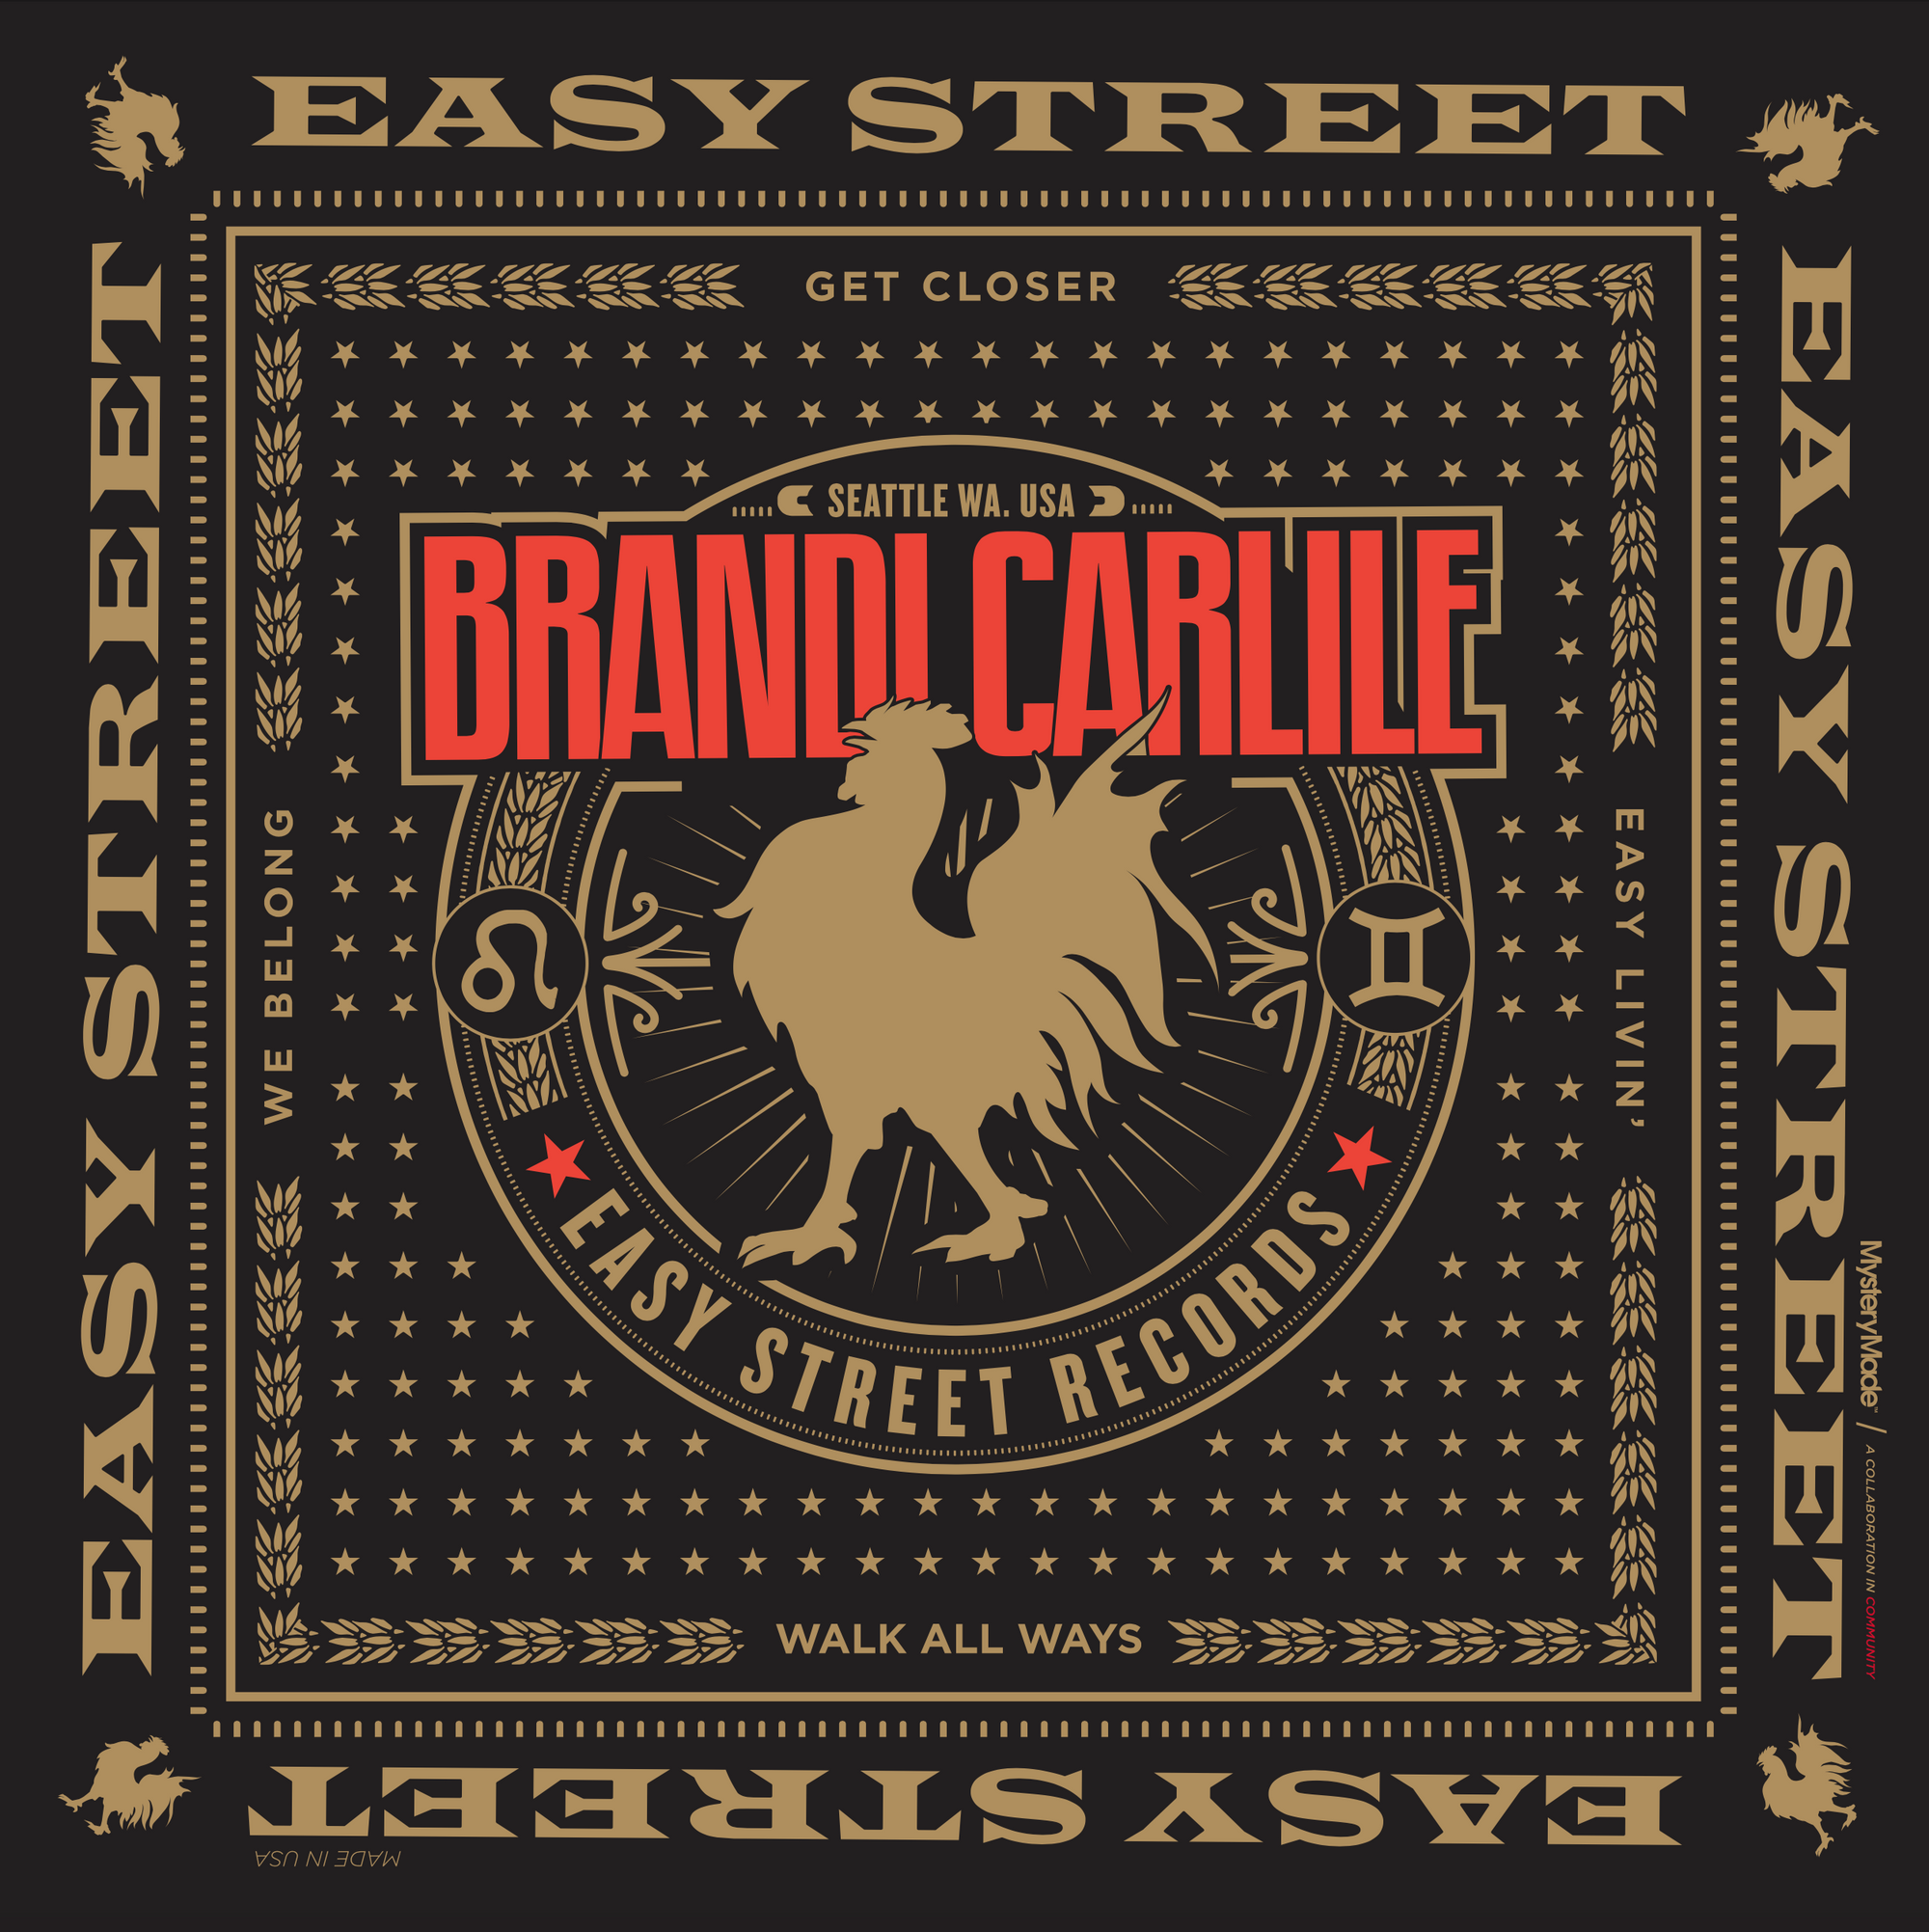 Brandi Carlile x Easy Street Bandana